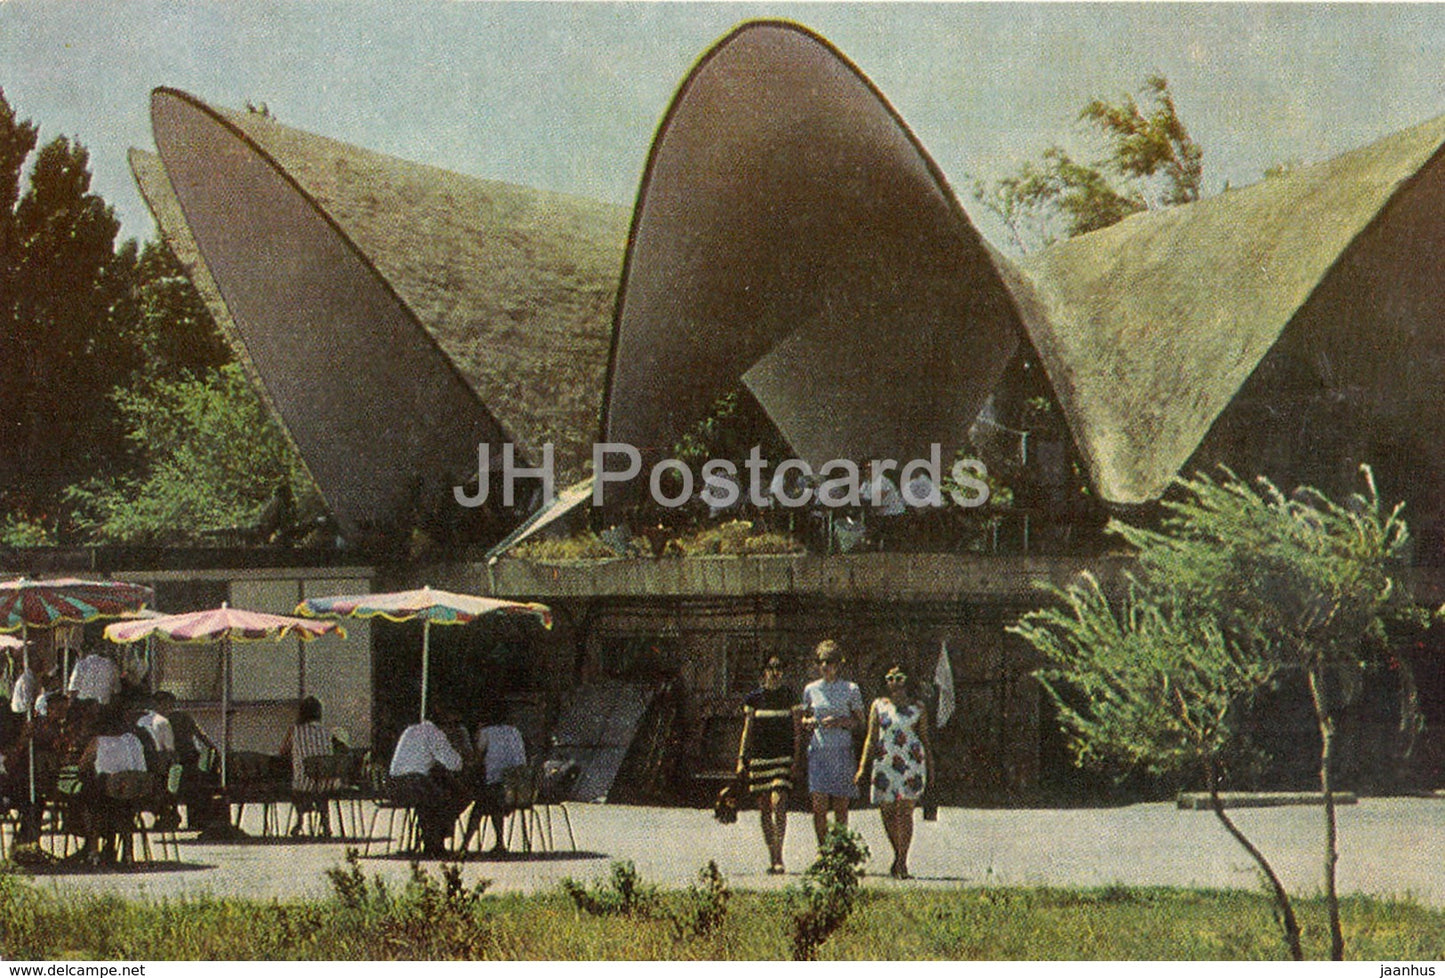 Baku - cafe Mirvari (Pearl) - 1972 - Azerbaijan USSR - unused - JH Postcards